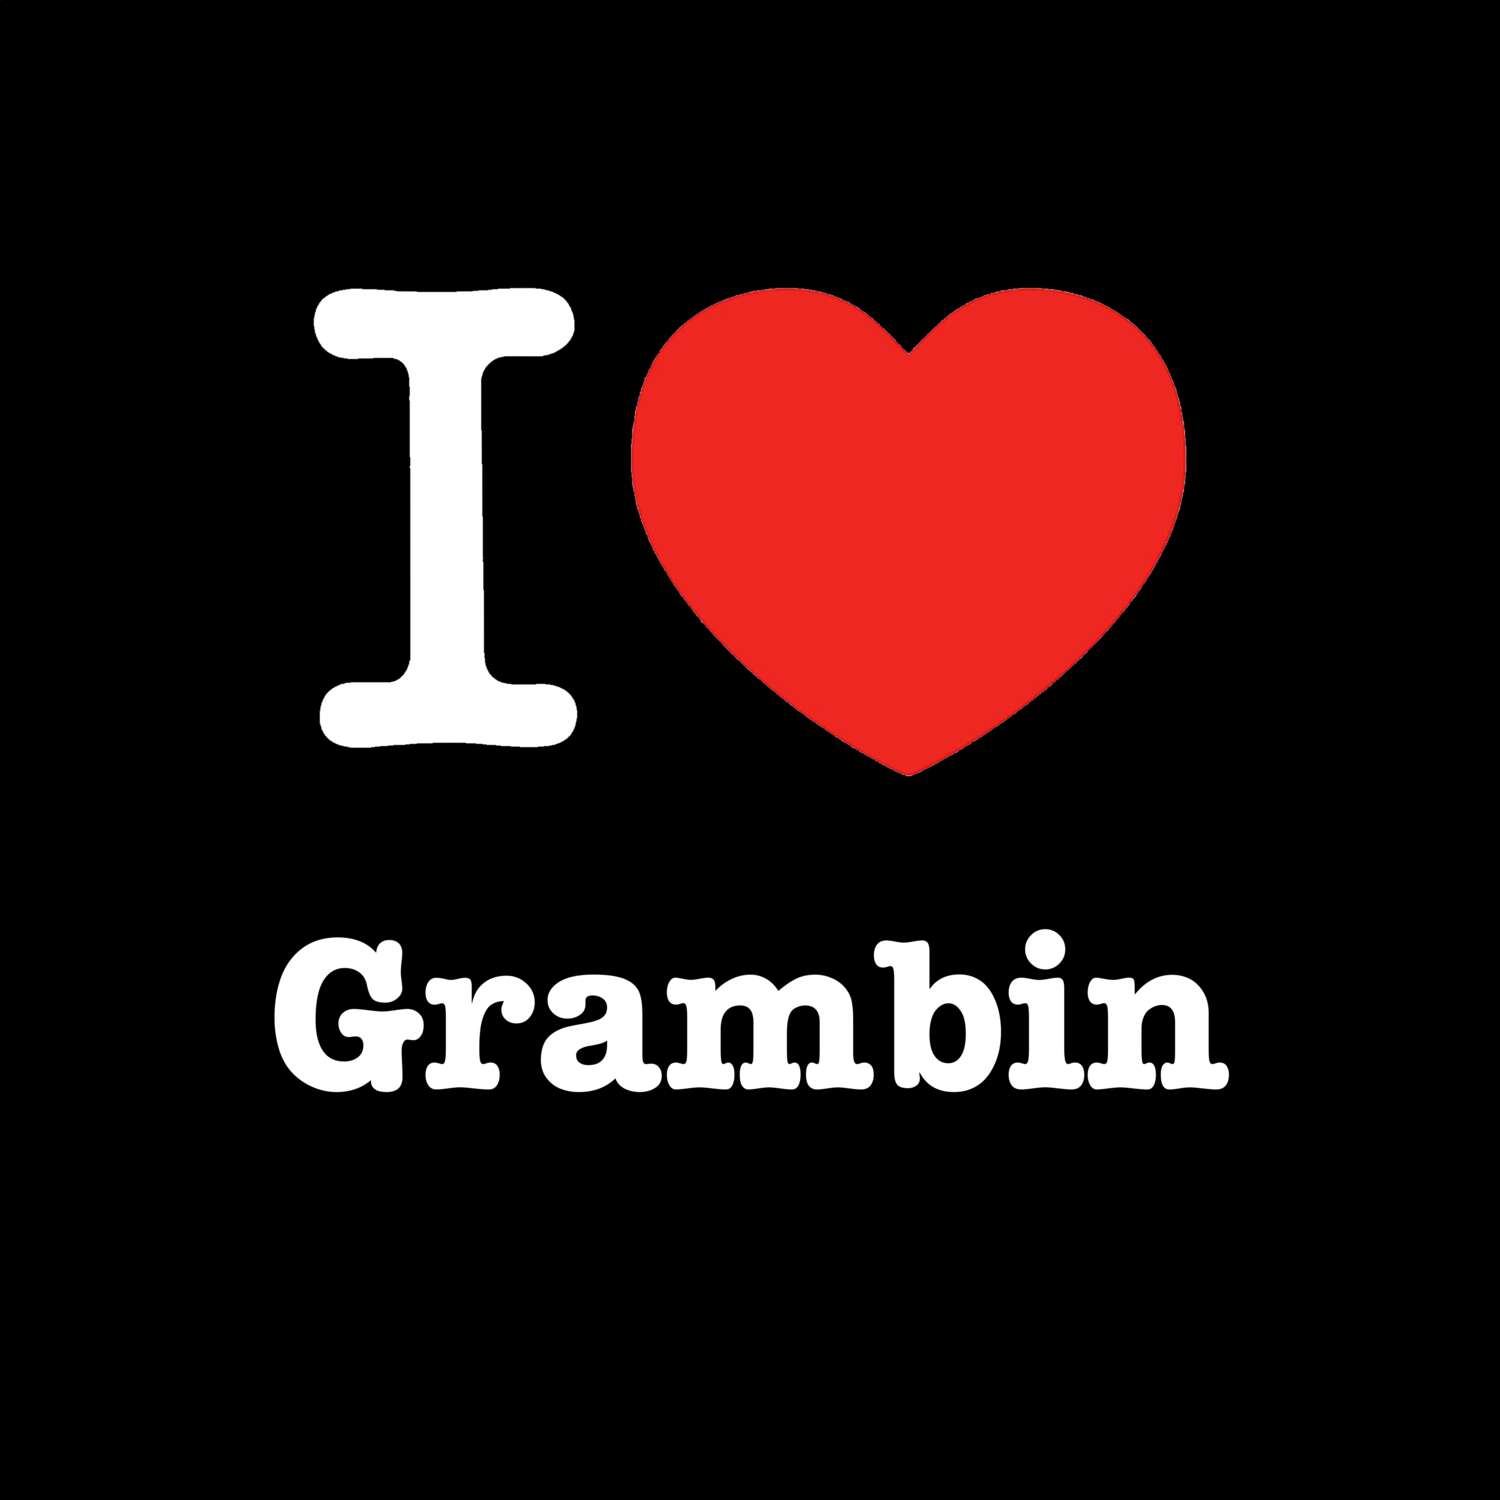 Grambin T-Shirt »I love«